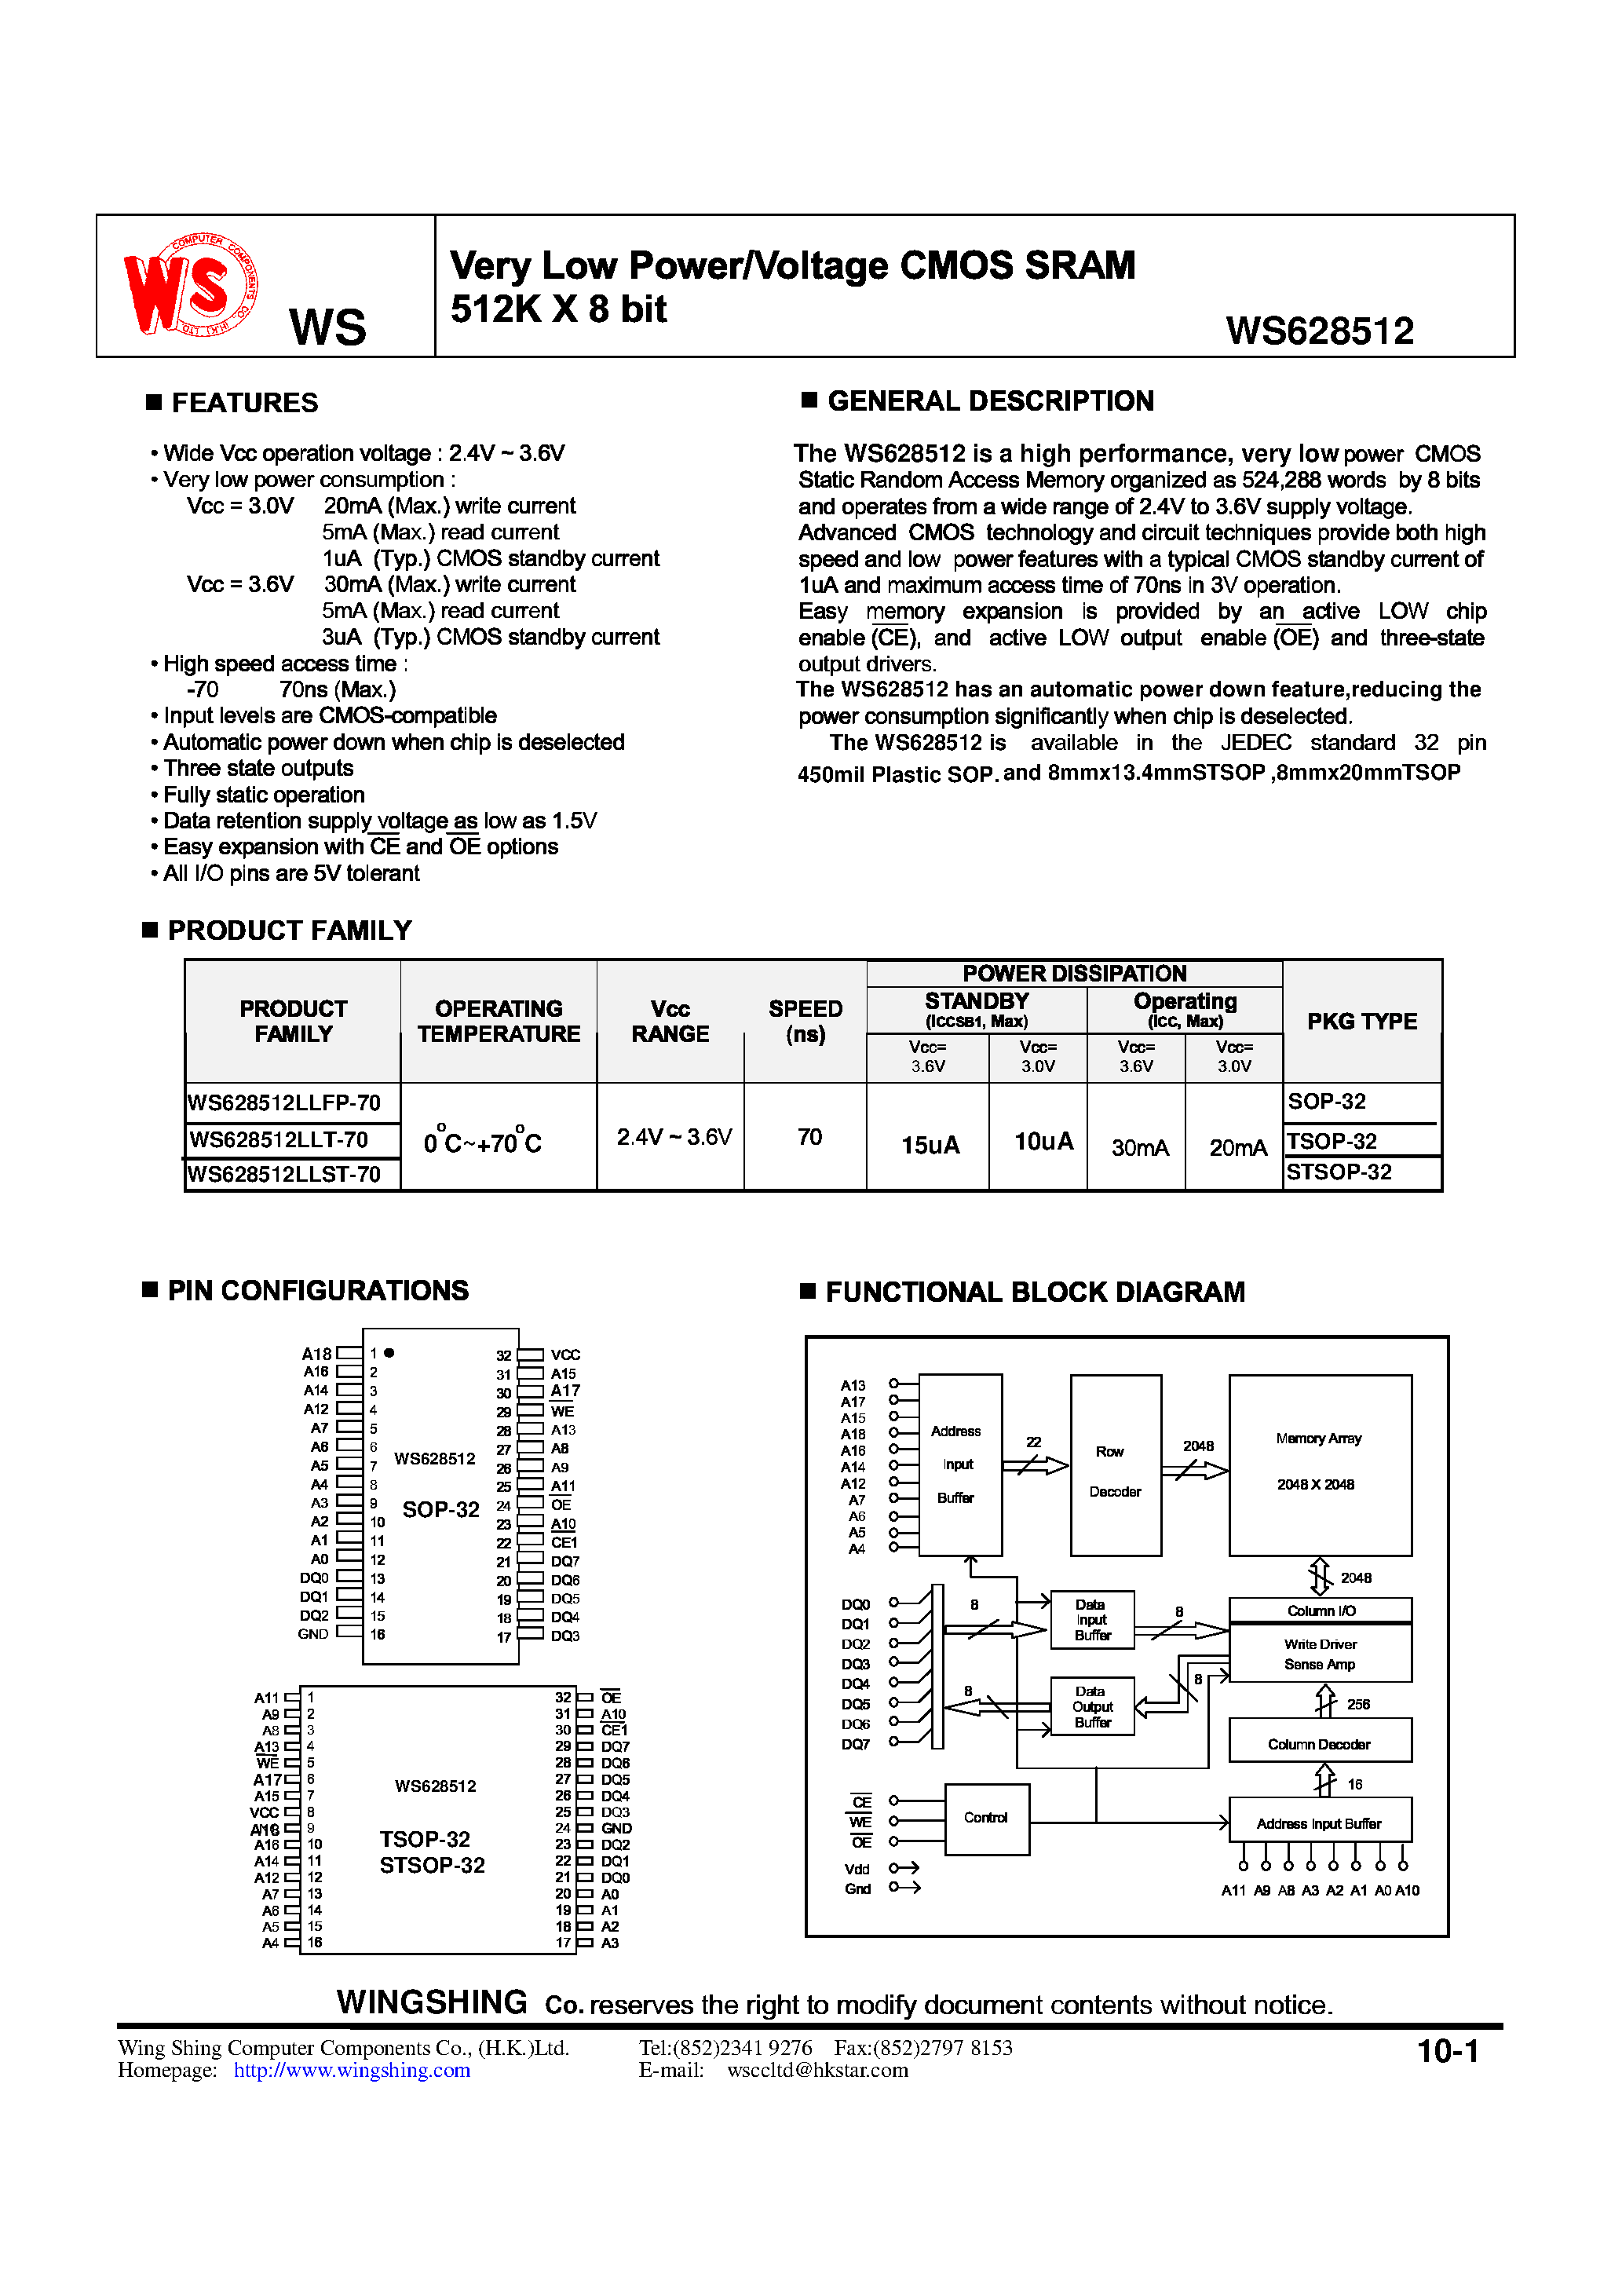 Datasheet WS628512LLST-70 - Very Low Power/Voltage CMOS SRAM 512K X 8 bit page 1